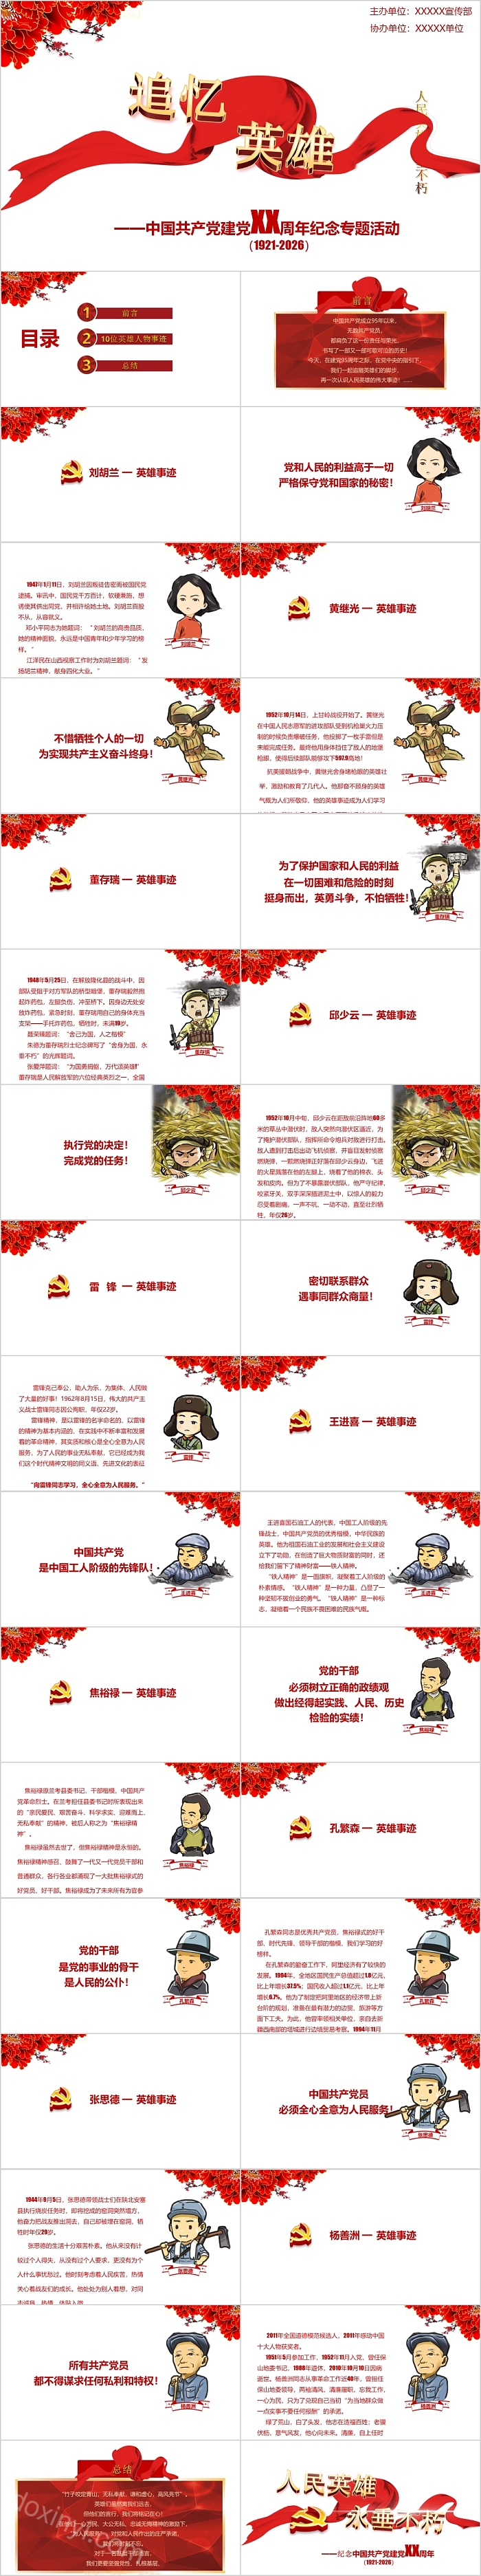 追忆英雄中国共产党建党XX周年纪念专题活动